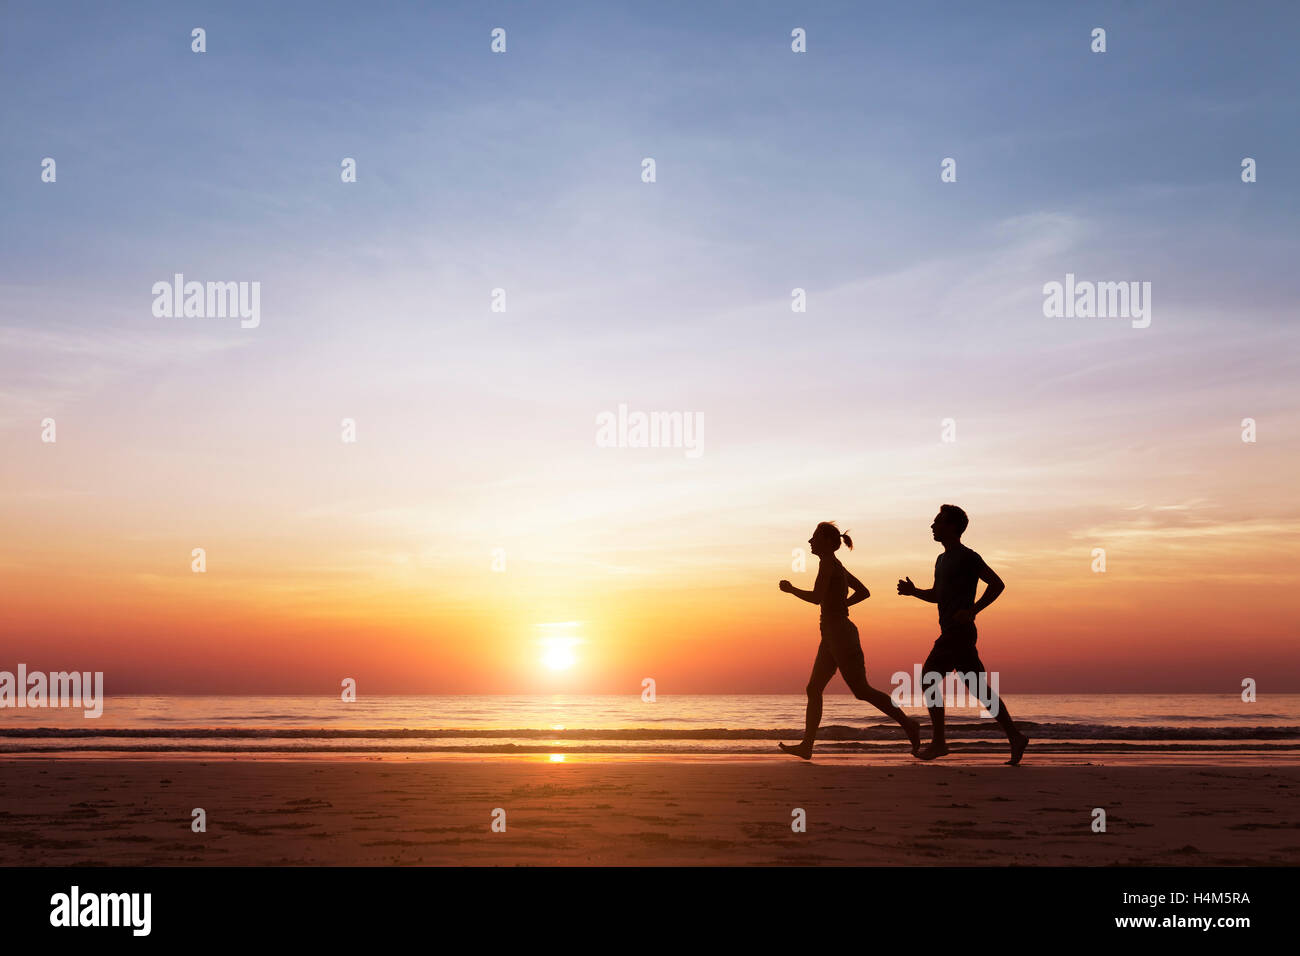 Silueta de dos corredores deportiva corriendo en la playa al anochecer, concepto sobre el estilo de vida saludable y el bienestar Foto de stock